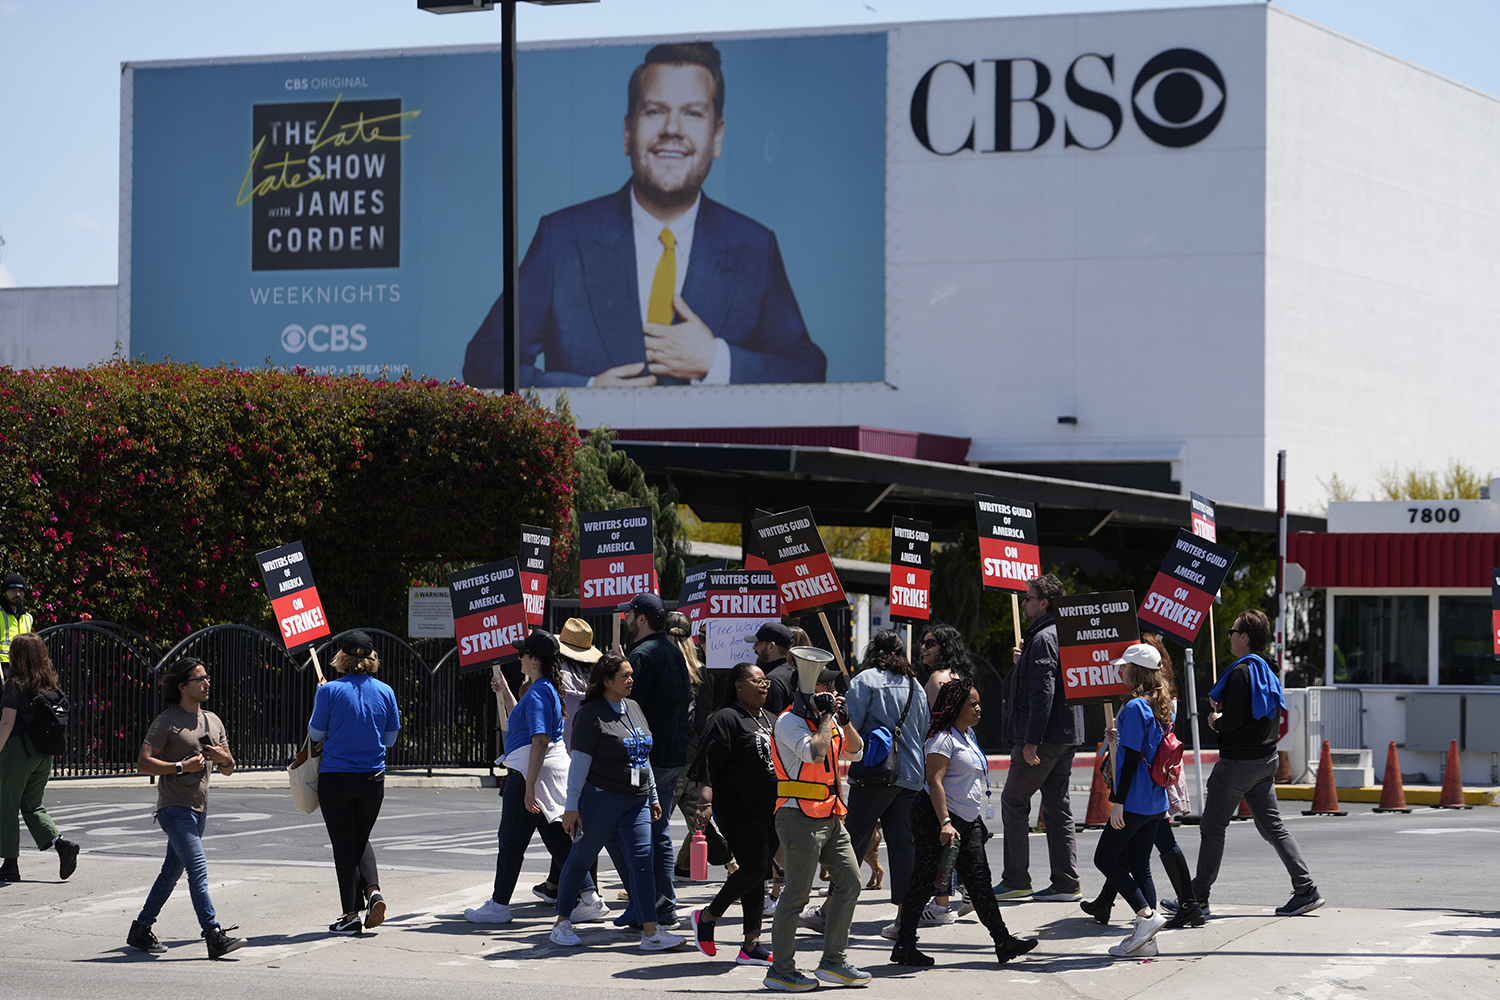 Ei folkemengde med skilt og ropert framfor eit billboard på ein bygning der det står CBS.